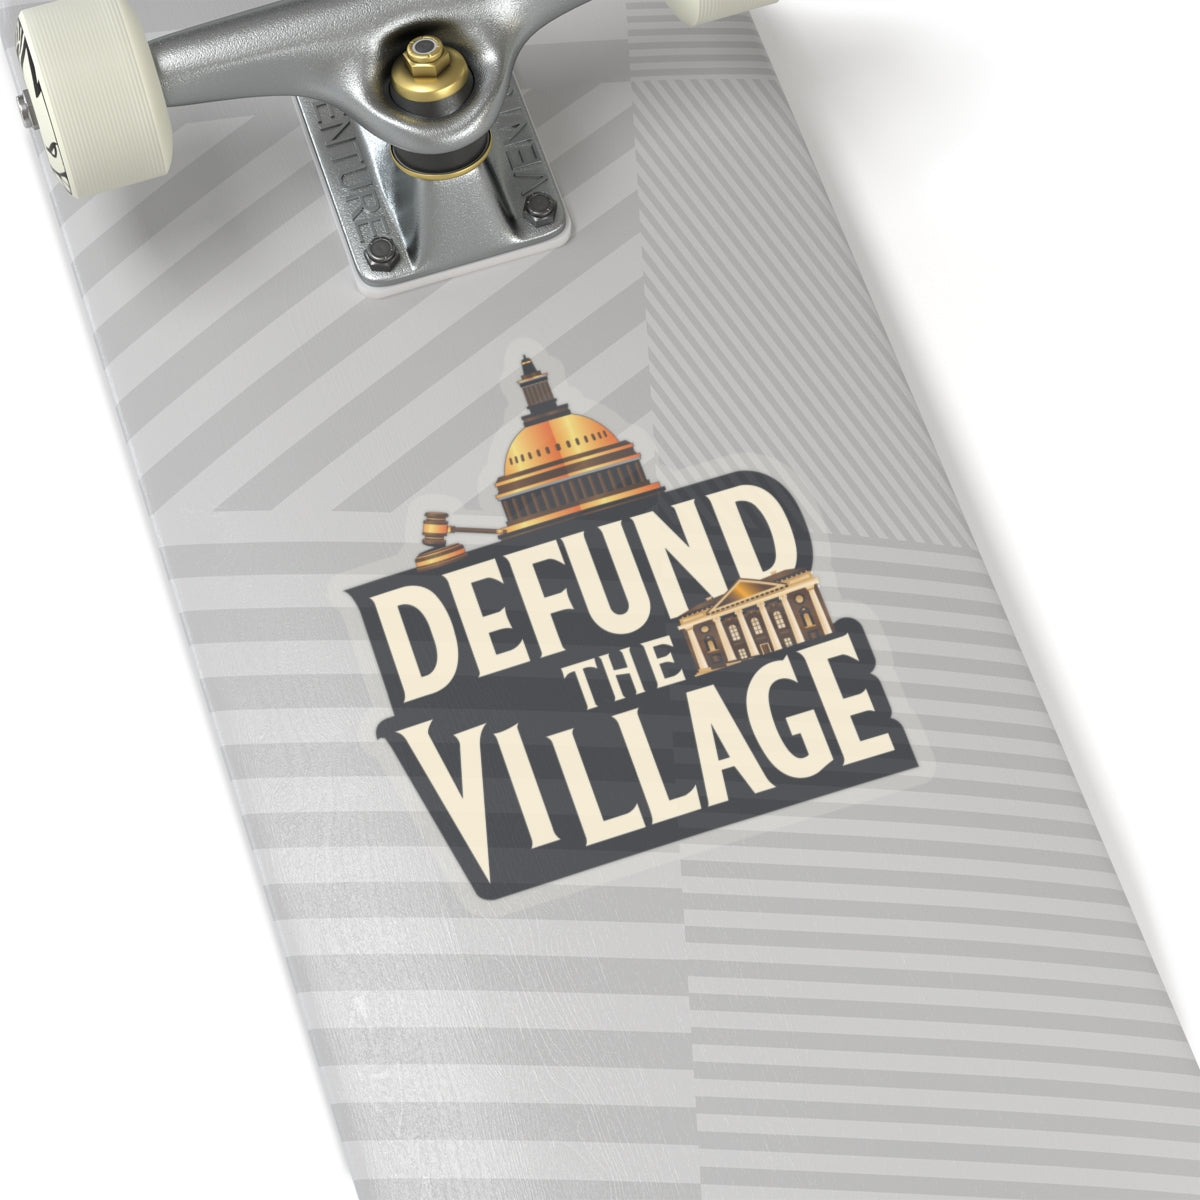 Defund The Village - Transparent Cut Stickers